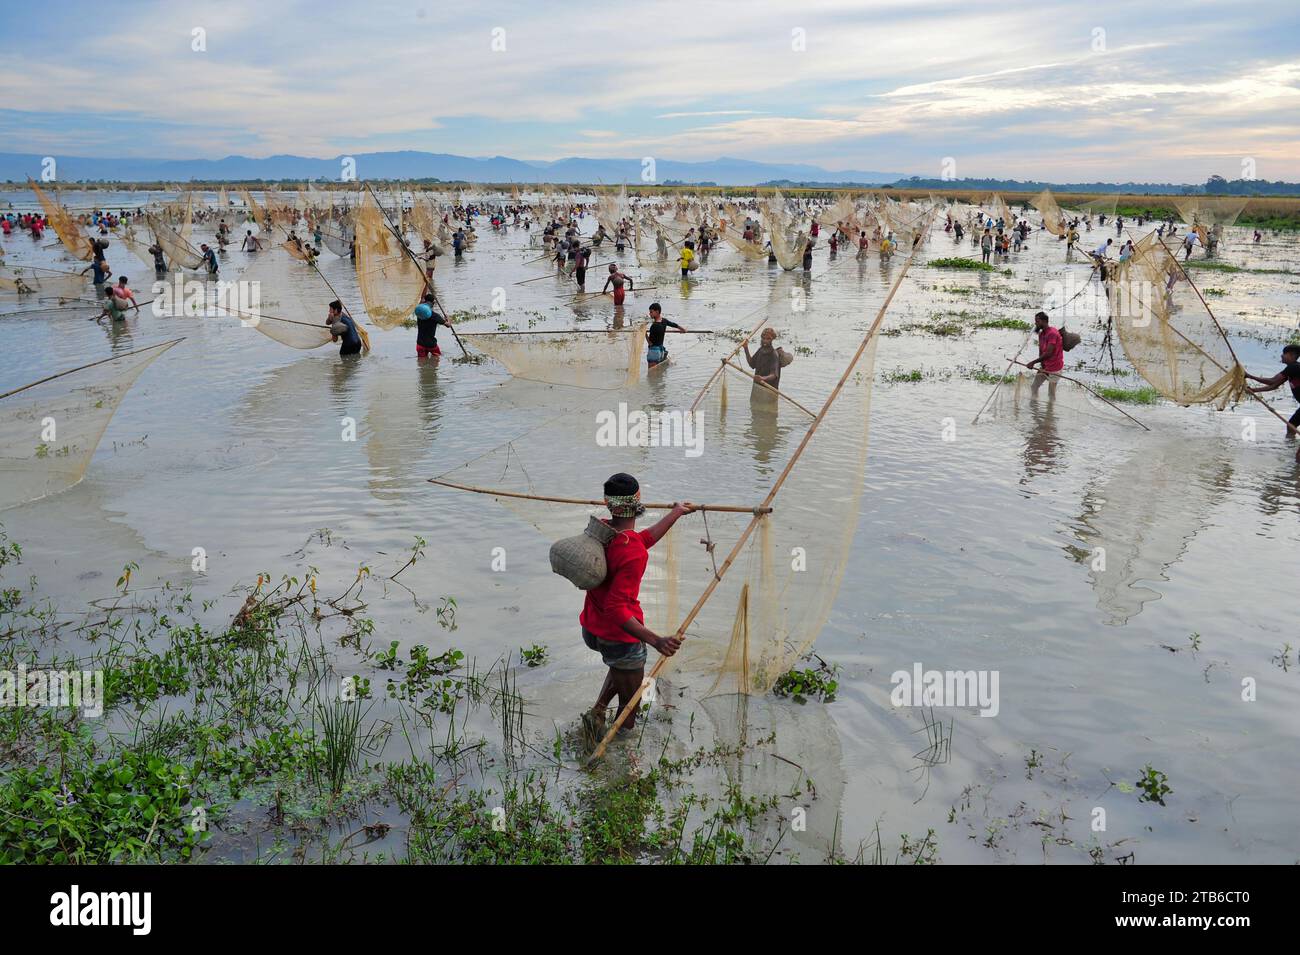 Le popolazioni rurali armate di trappole e reti per pesci di bambù partecipano a un festival invernale di pesca di 200 anni presso la jofra beel of gasbari union di Kanaighat upazila di Sylhet, Bangladesh. Foto Stock